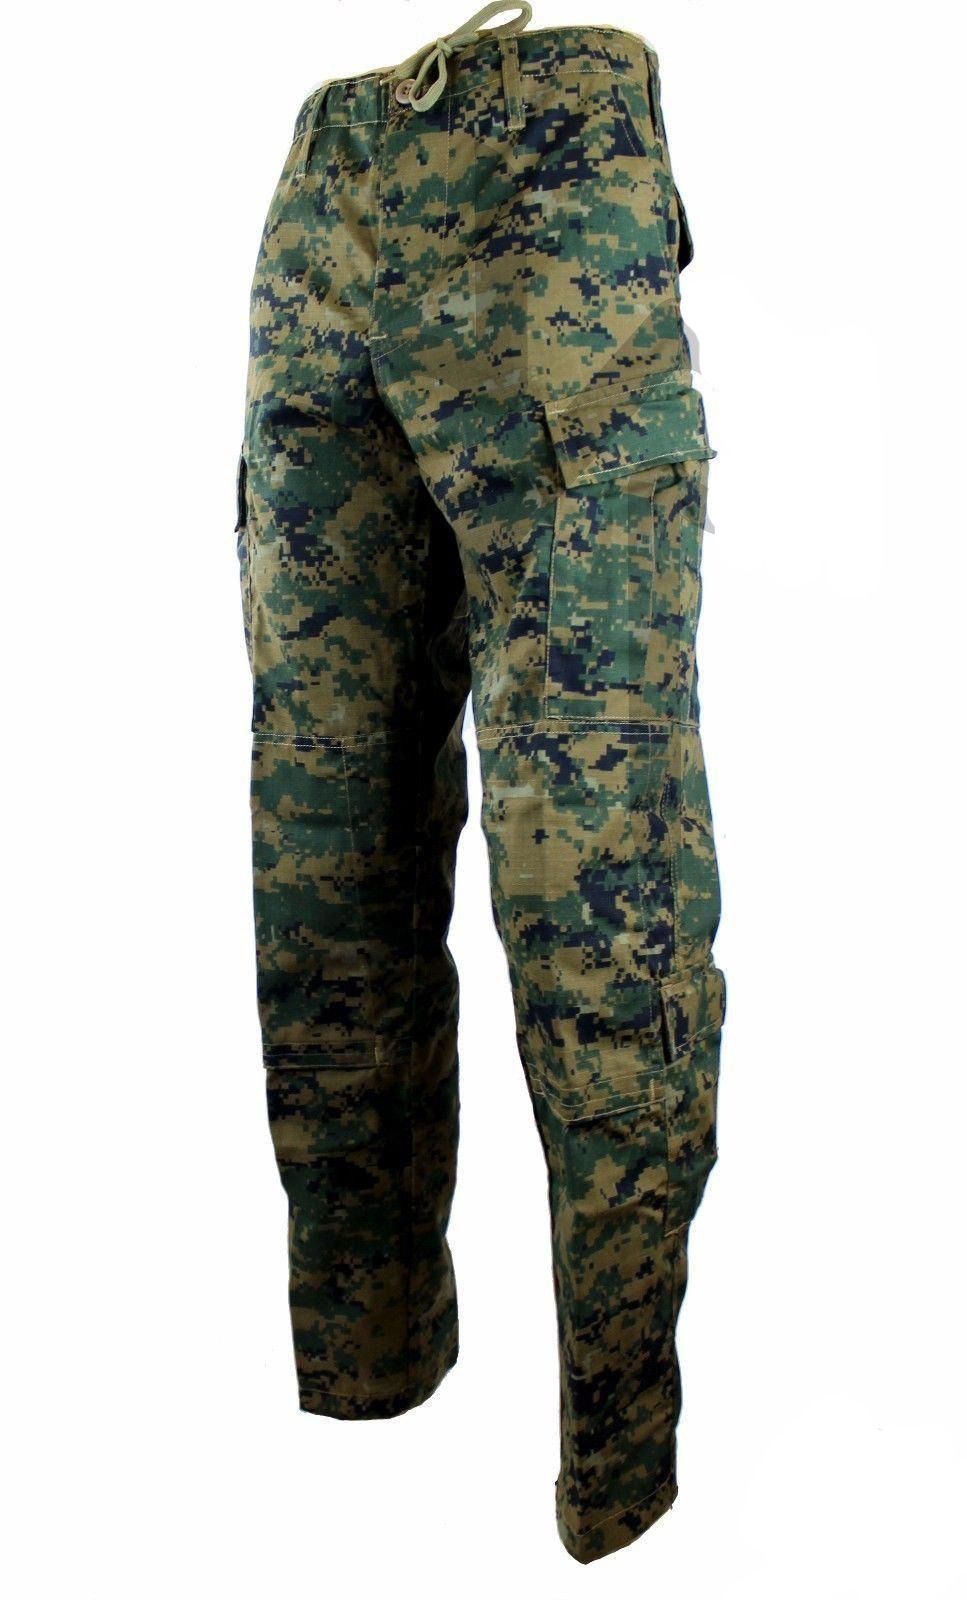 Digital Camo BDU Pants (MARPAT) Extra Large